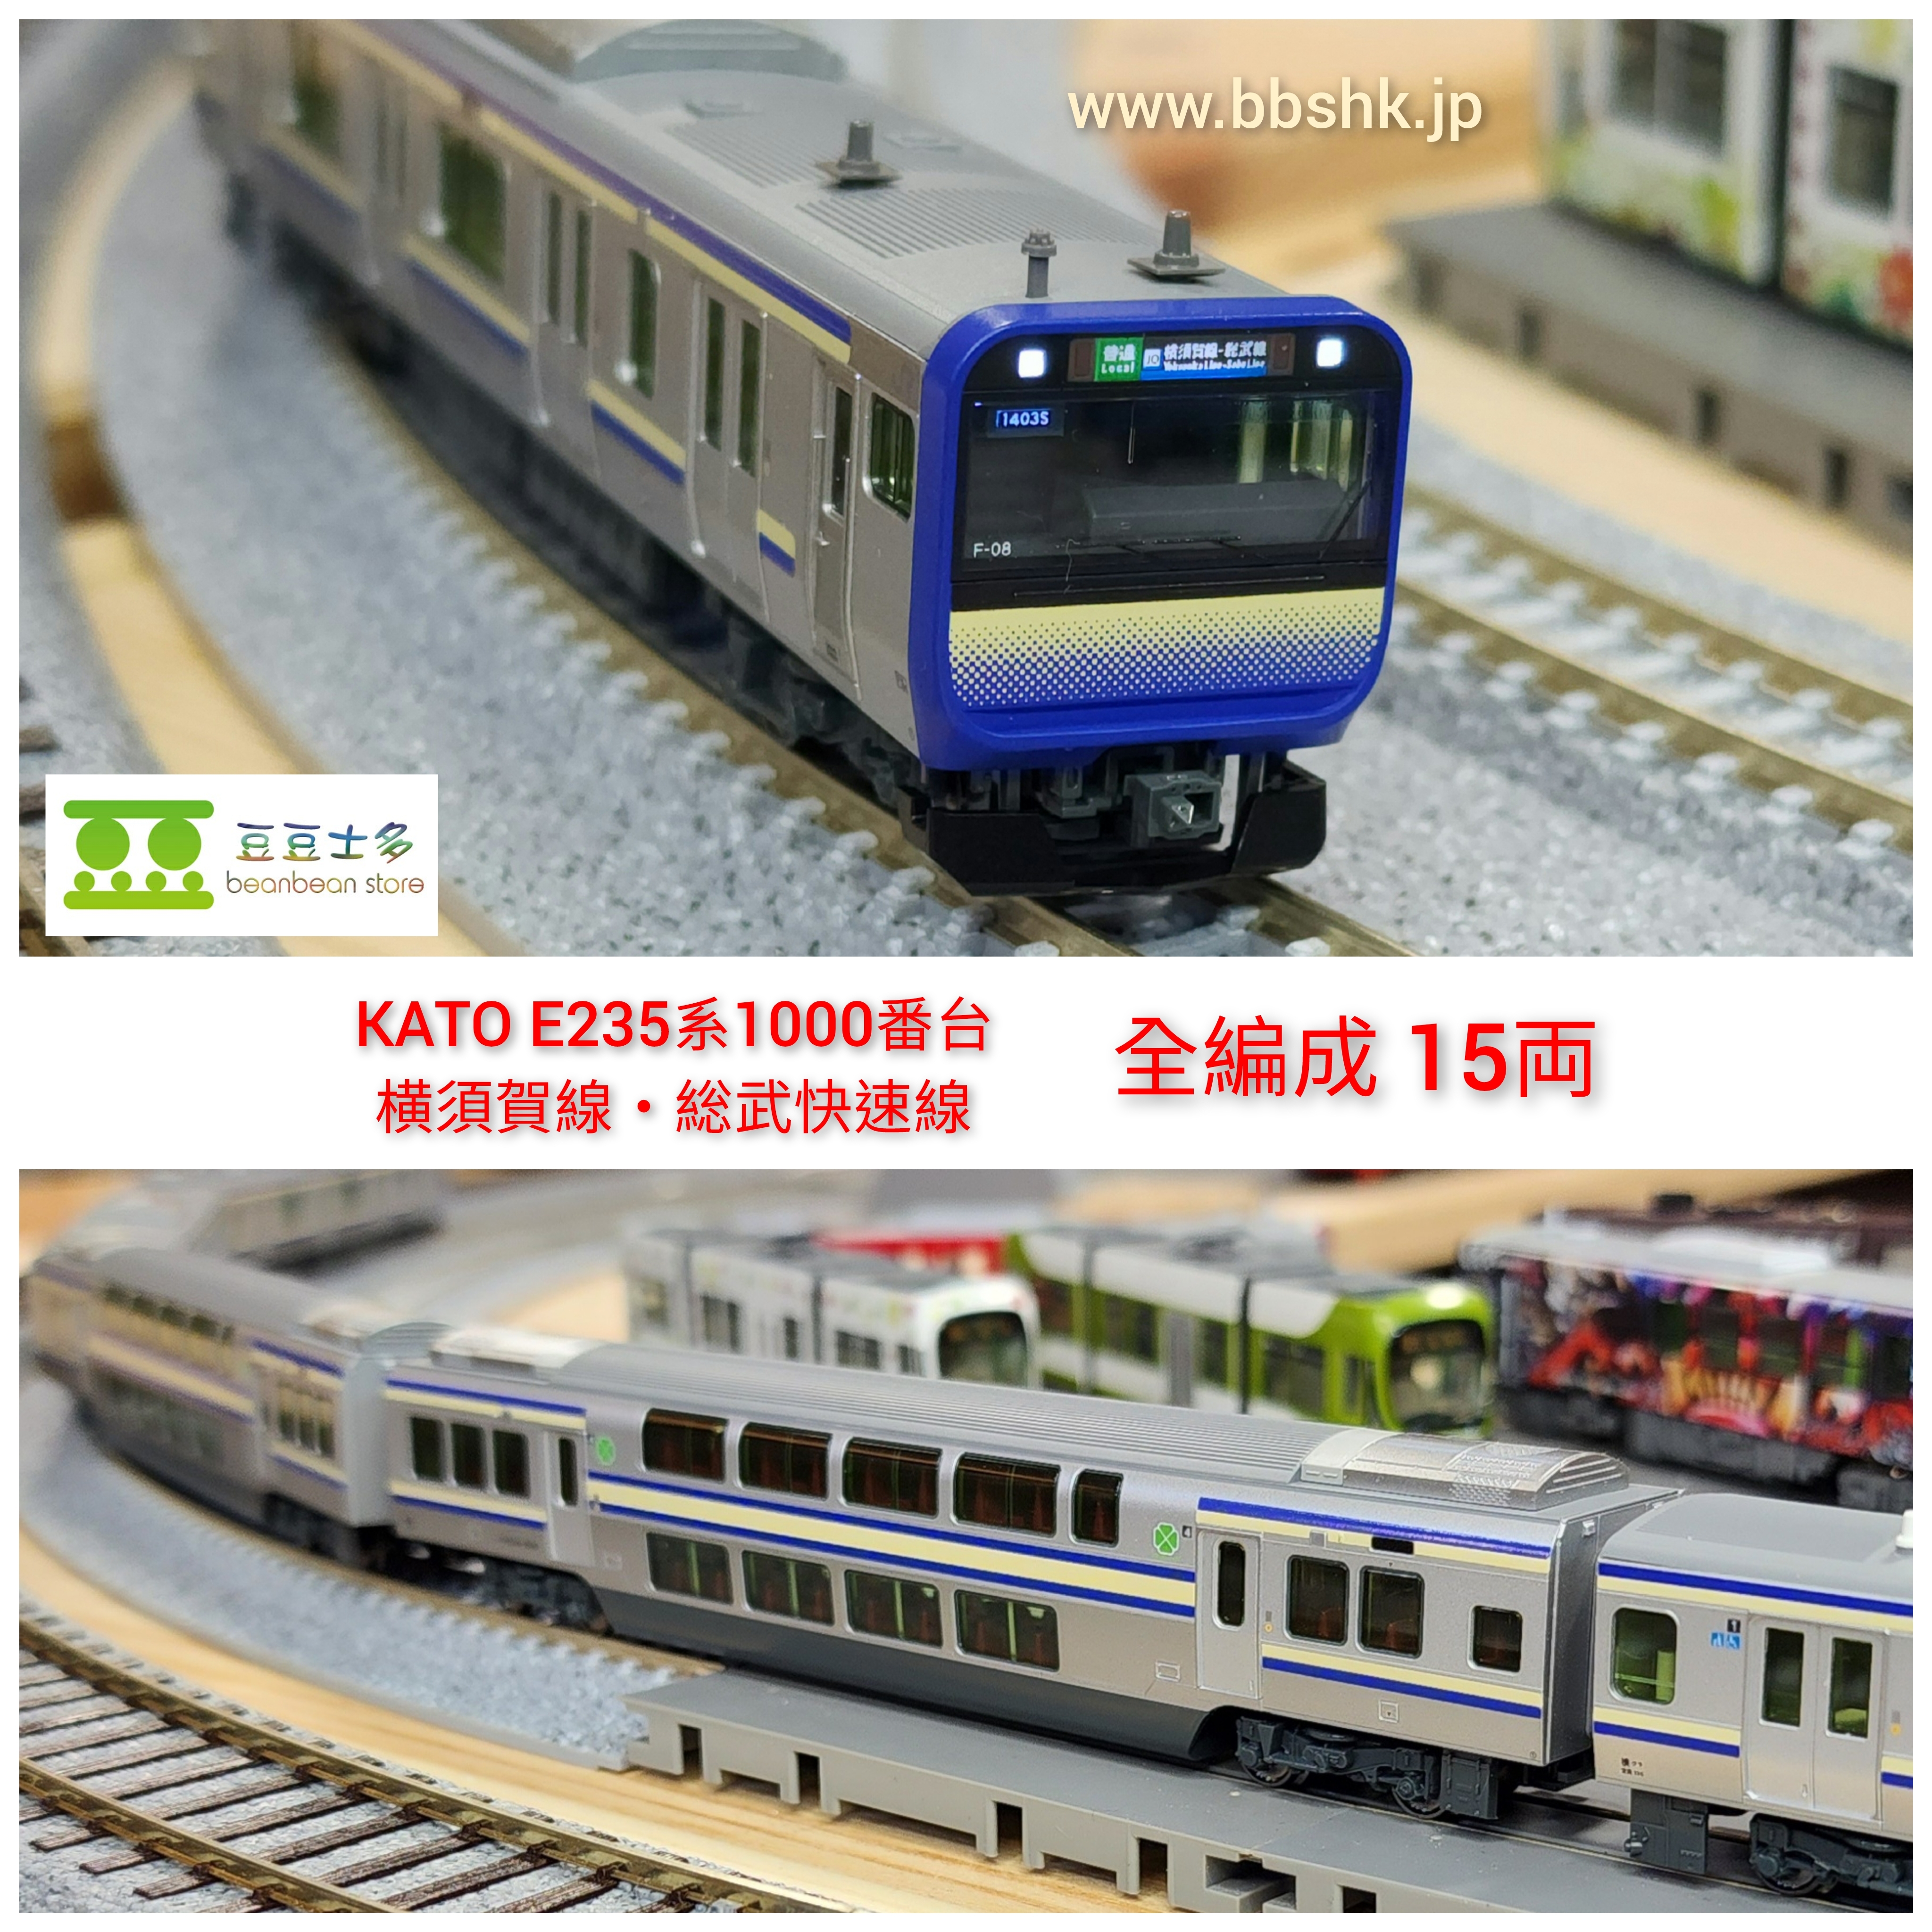 KATO E235 1000番台 横須賀線 総武快速線 15両フル - 鉄道模型